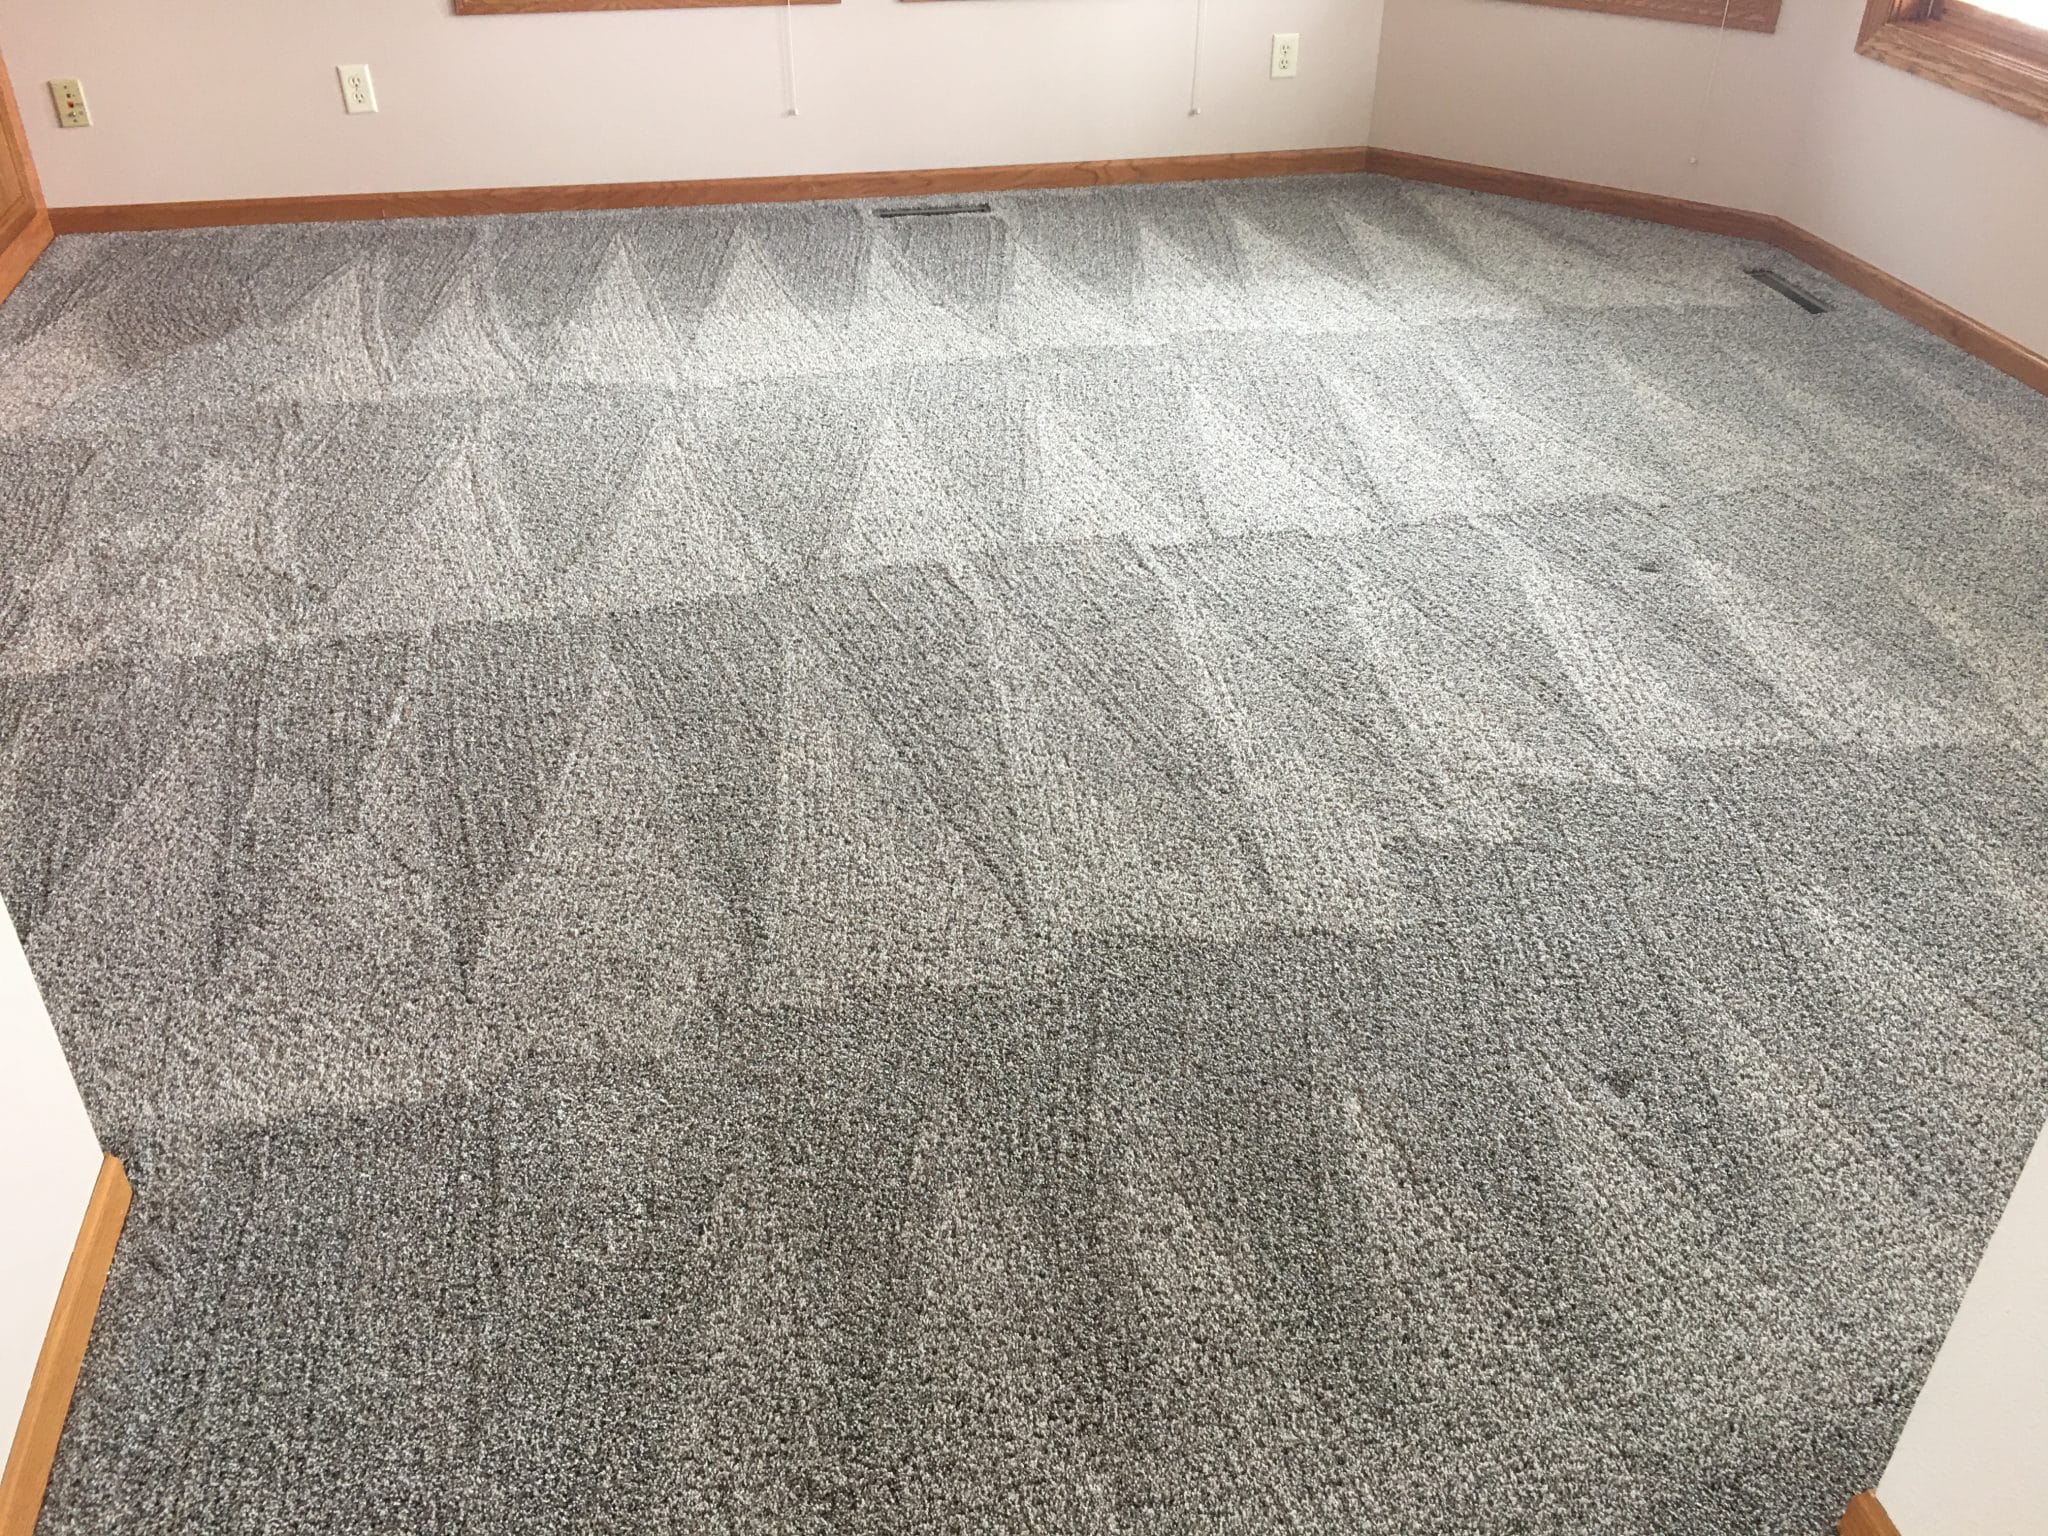 commercial area rug cleaning in Racine, racine commercial area rug cleaning, commercial area rug cleaning company in Racine